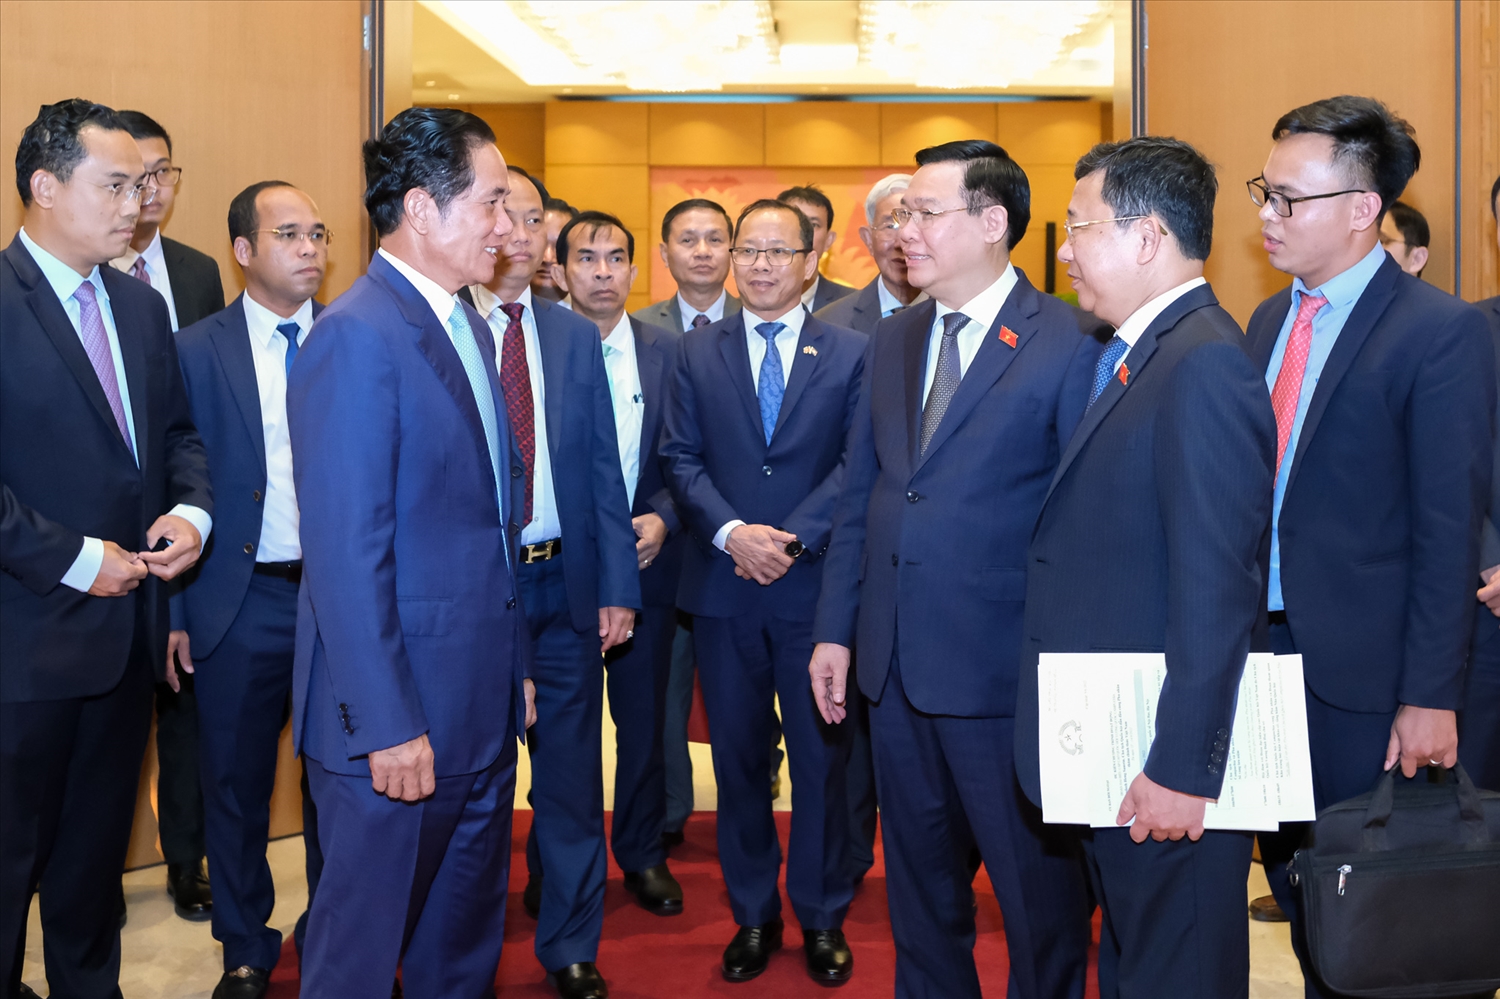 Chuyến thăm của Đoàn đại biểu cấp cao Thủ đô Phnôm Pênh có ý nghĩa quan trọng trong bối cảnh hai nước đang tổ chức nhiều hoạt động kỷ niệm Năm Hữu nghị Việt Nam - Campuchia 2022, kỷ niệm 55 năm thiết lập quan hệ ngoại giao Việt Nam - Campuchia.